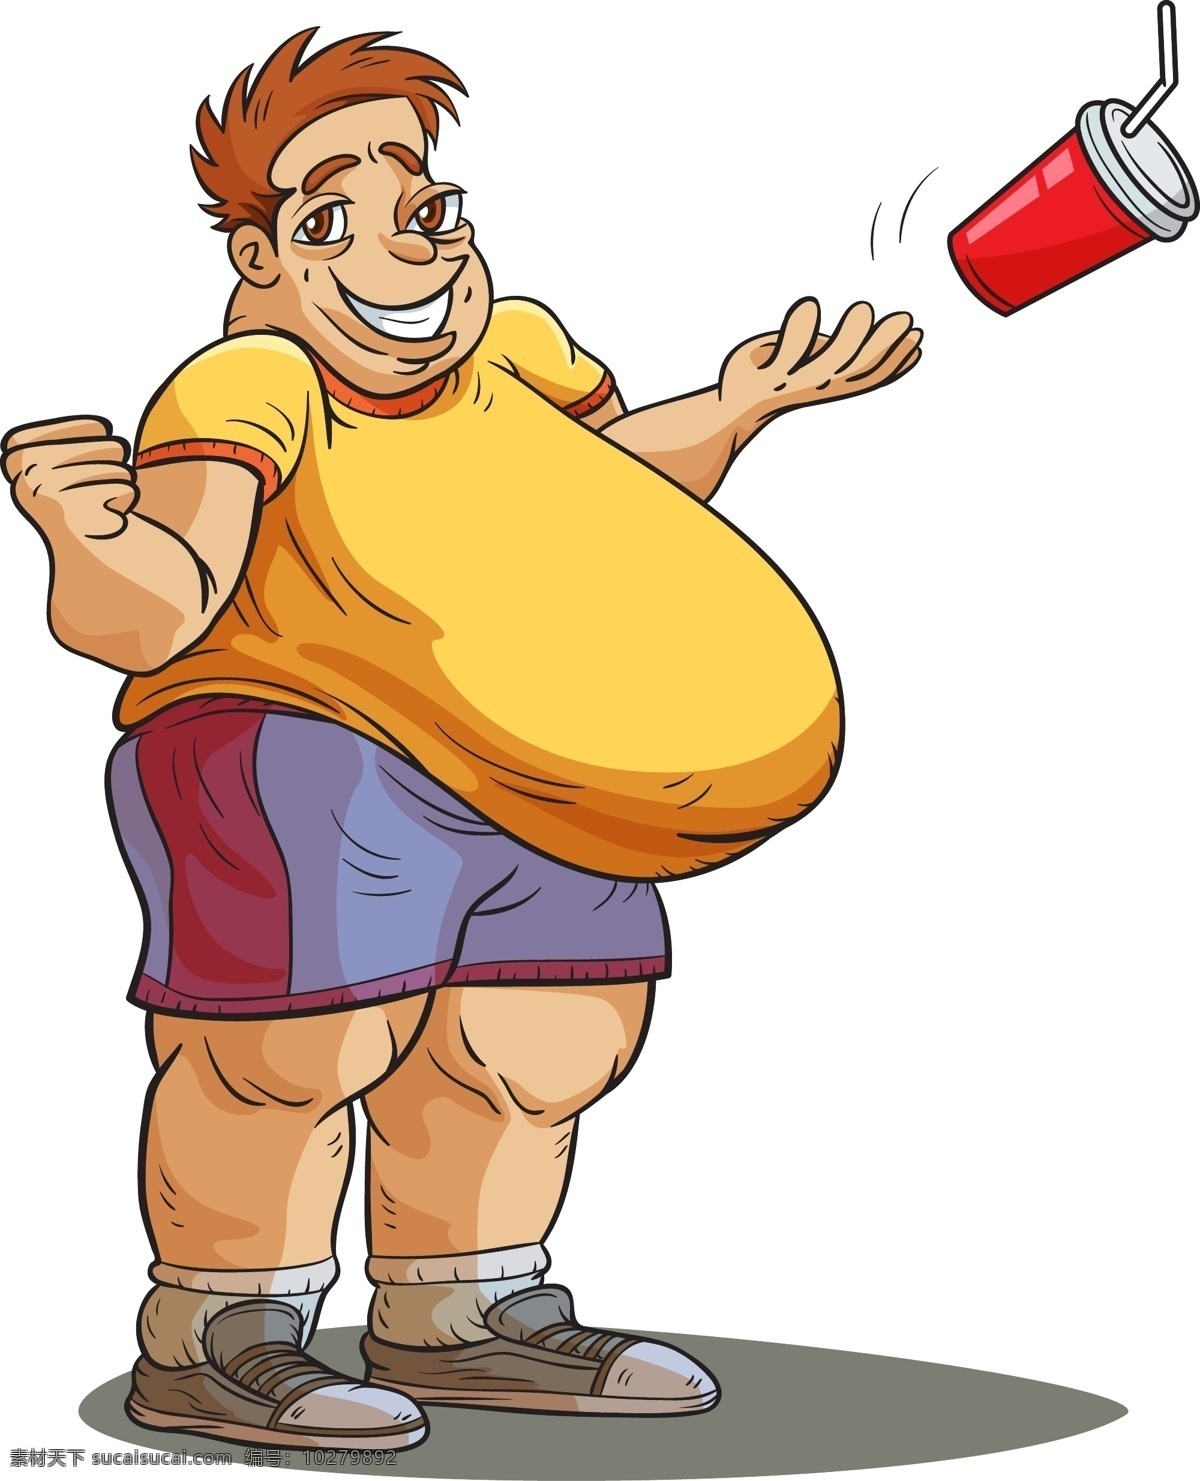 大肚子男士 胖男人 男士 男性 大肚子 肥胖 减肥 瘦身 卡通人物漫画 人物插画 人物插图 日常生活 矢量人物 矢量素材